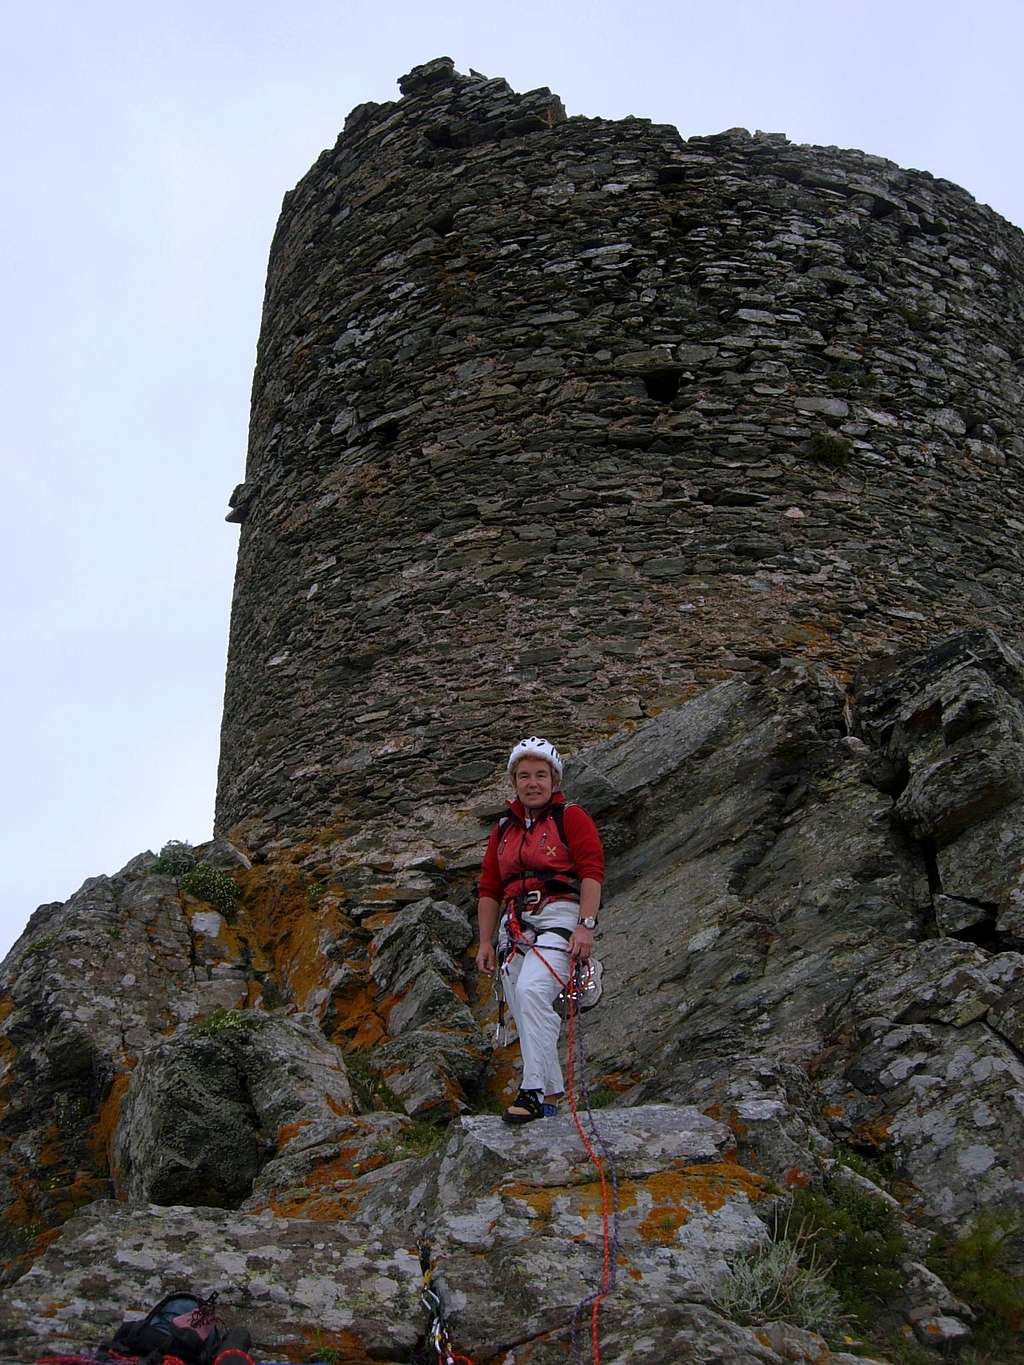 An ancient Genoese tower on Tour de Seneque, Corsica